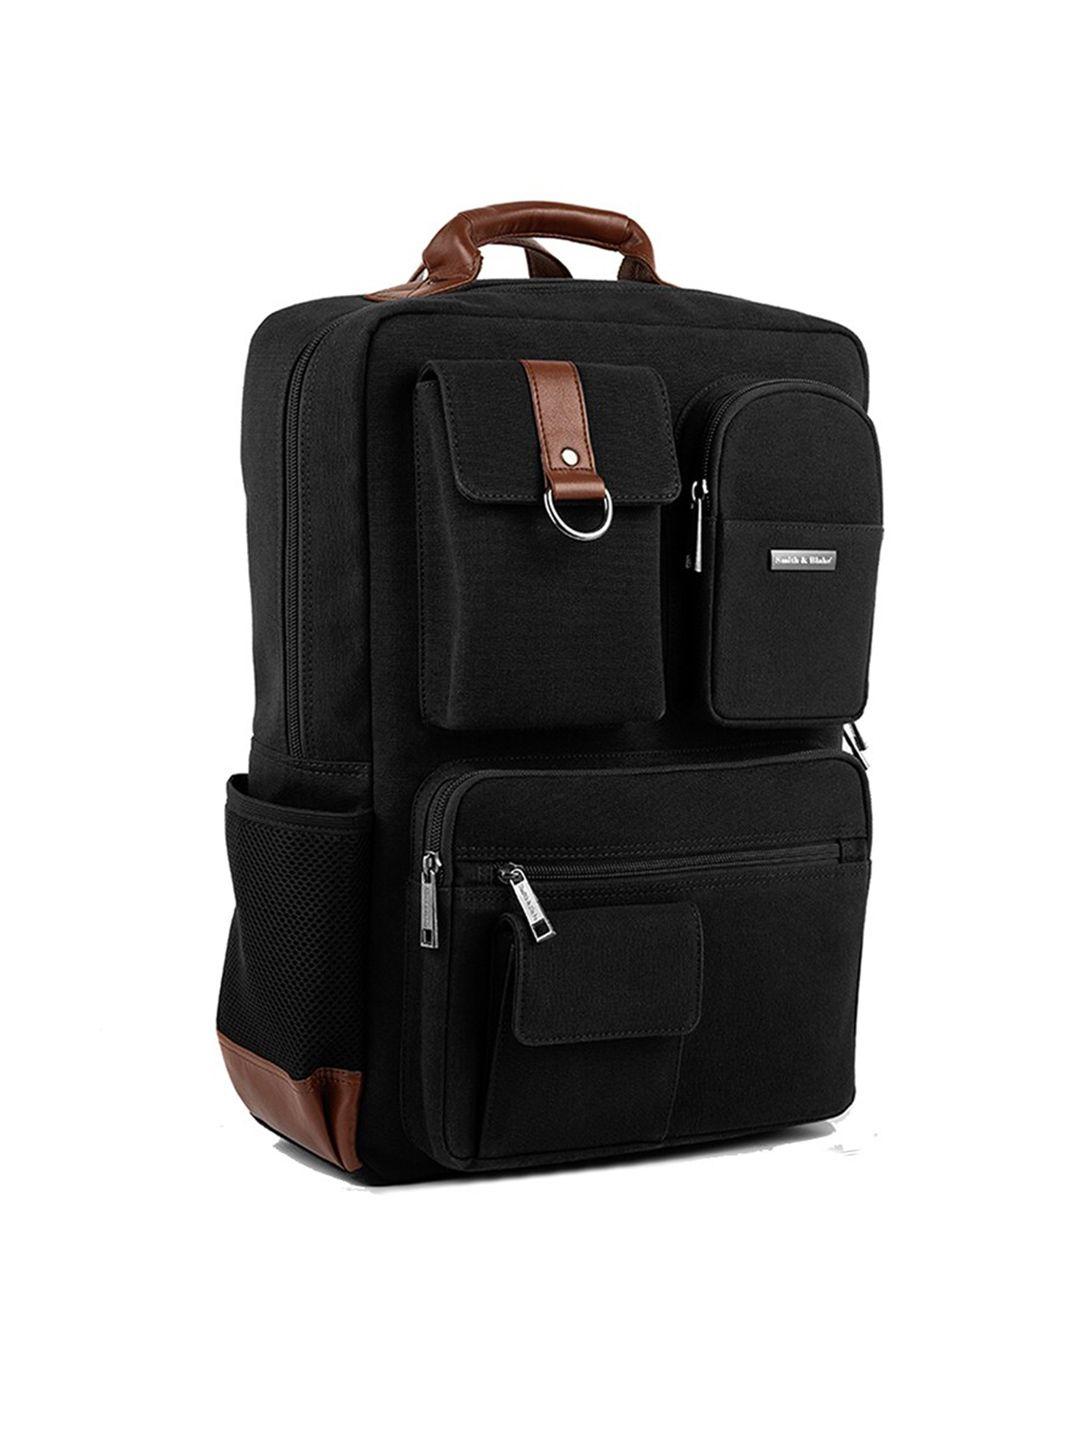 smith & blake durabase medium size backpack